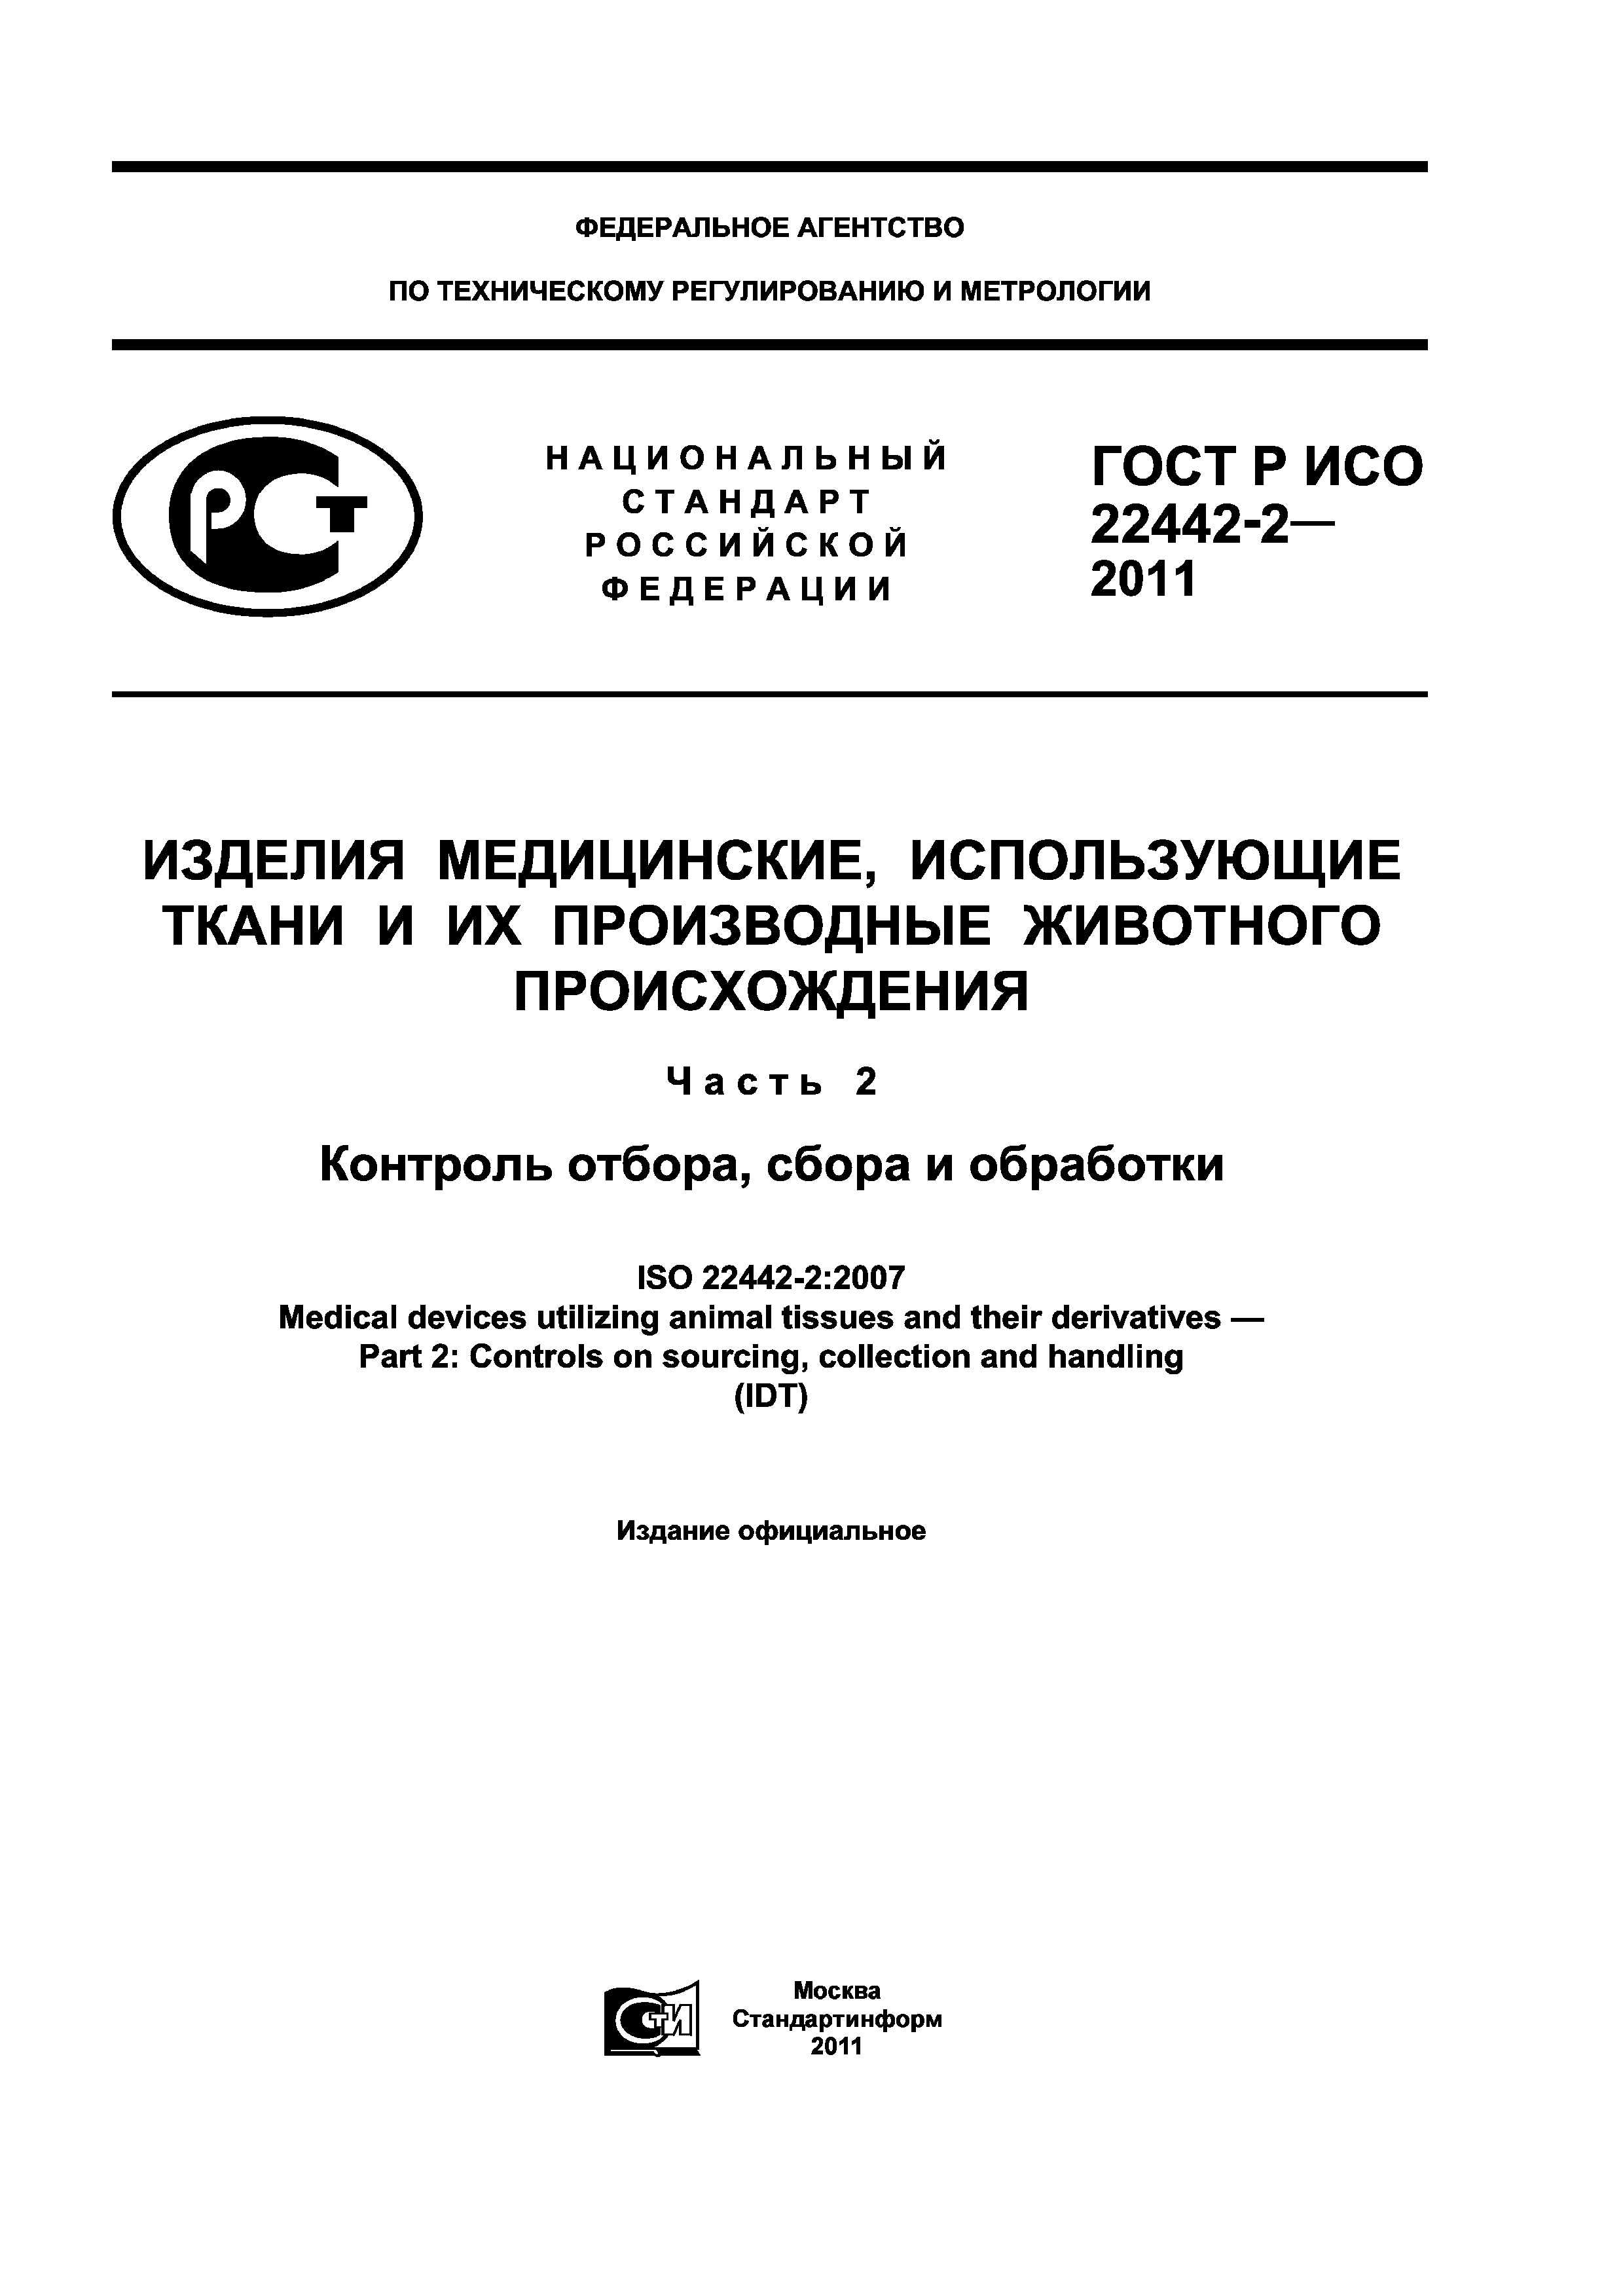 ГОСТ Р ИСО 22442-2-2011